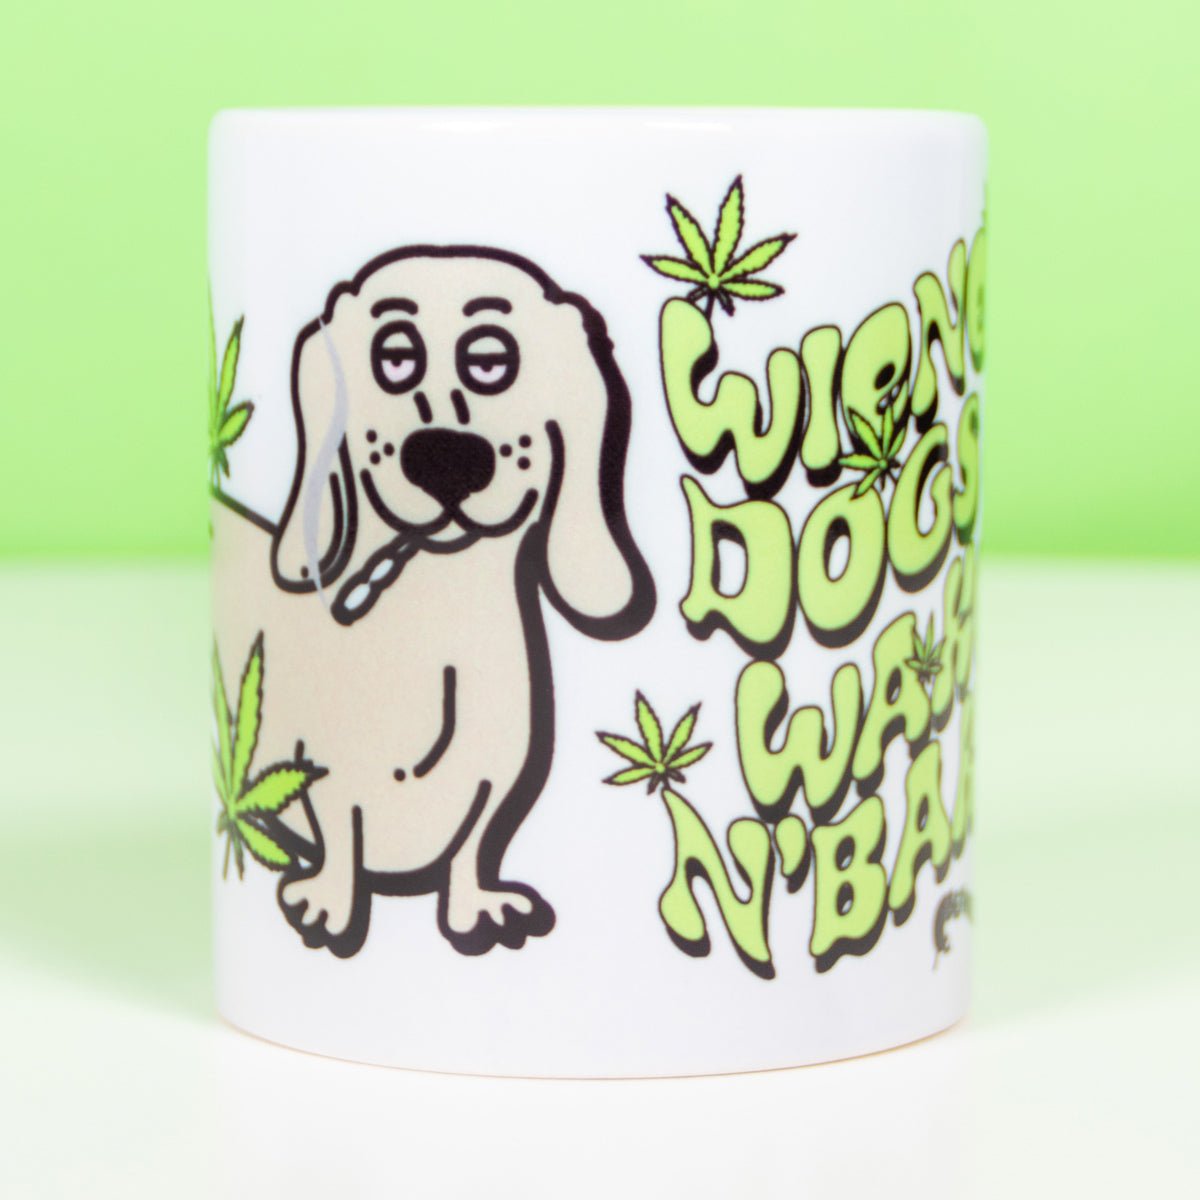 wiener dogs & wake n' bake mug - bean goods